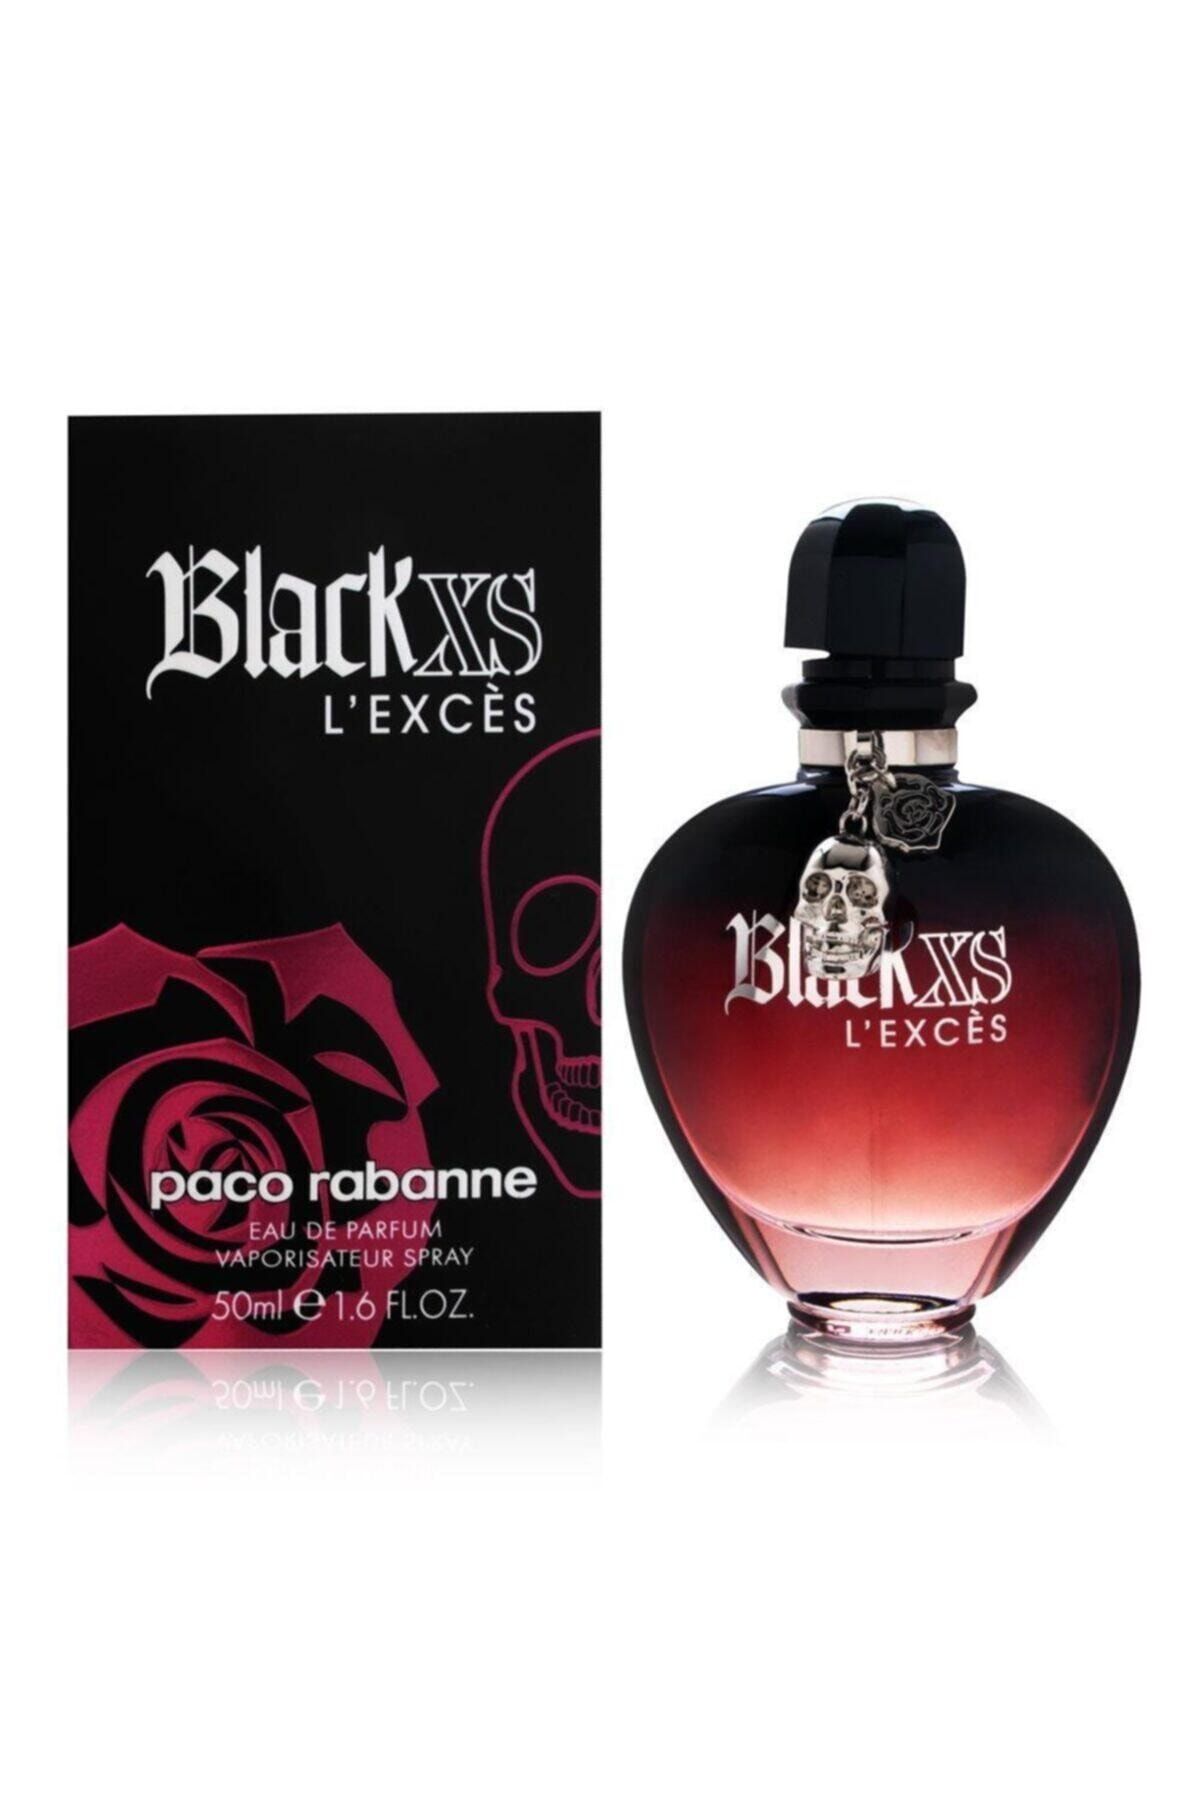 Paco rabanne xs женские. Paco Rabanne Black XS L'exces. Paco Rabanne Black XS L'exces for her 50 ml. Paco Rabanne Black XS 80ml. Paco Rabanne Black XS L'exces for her.